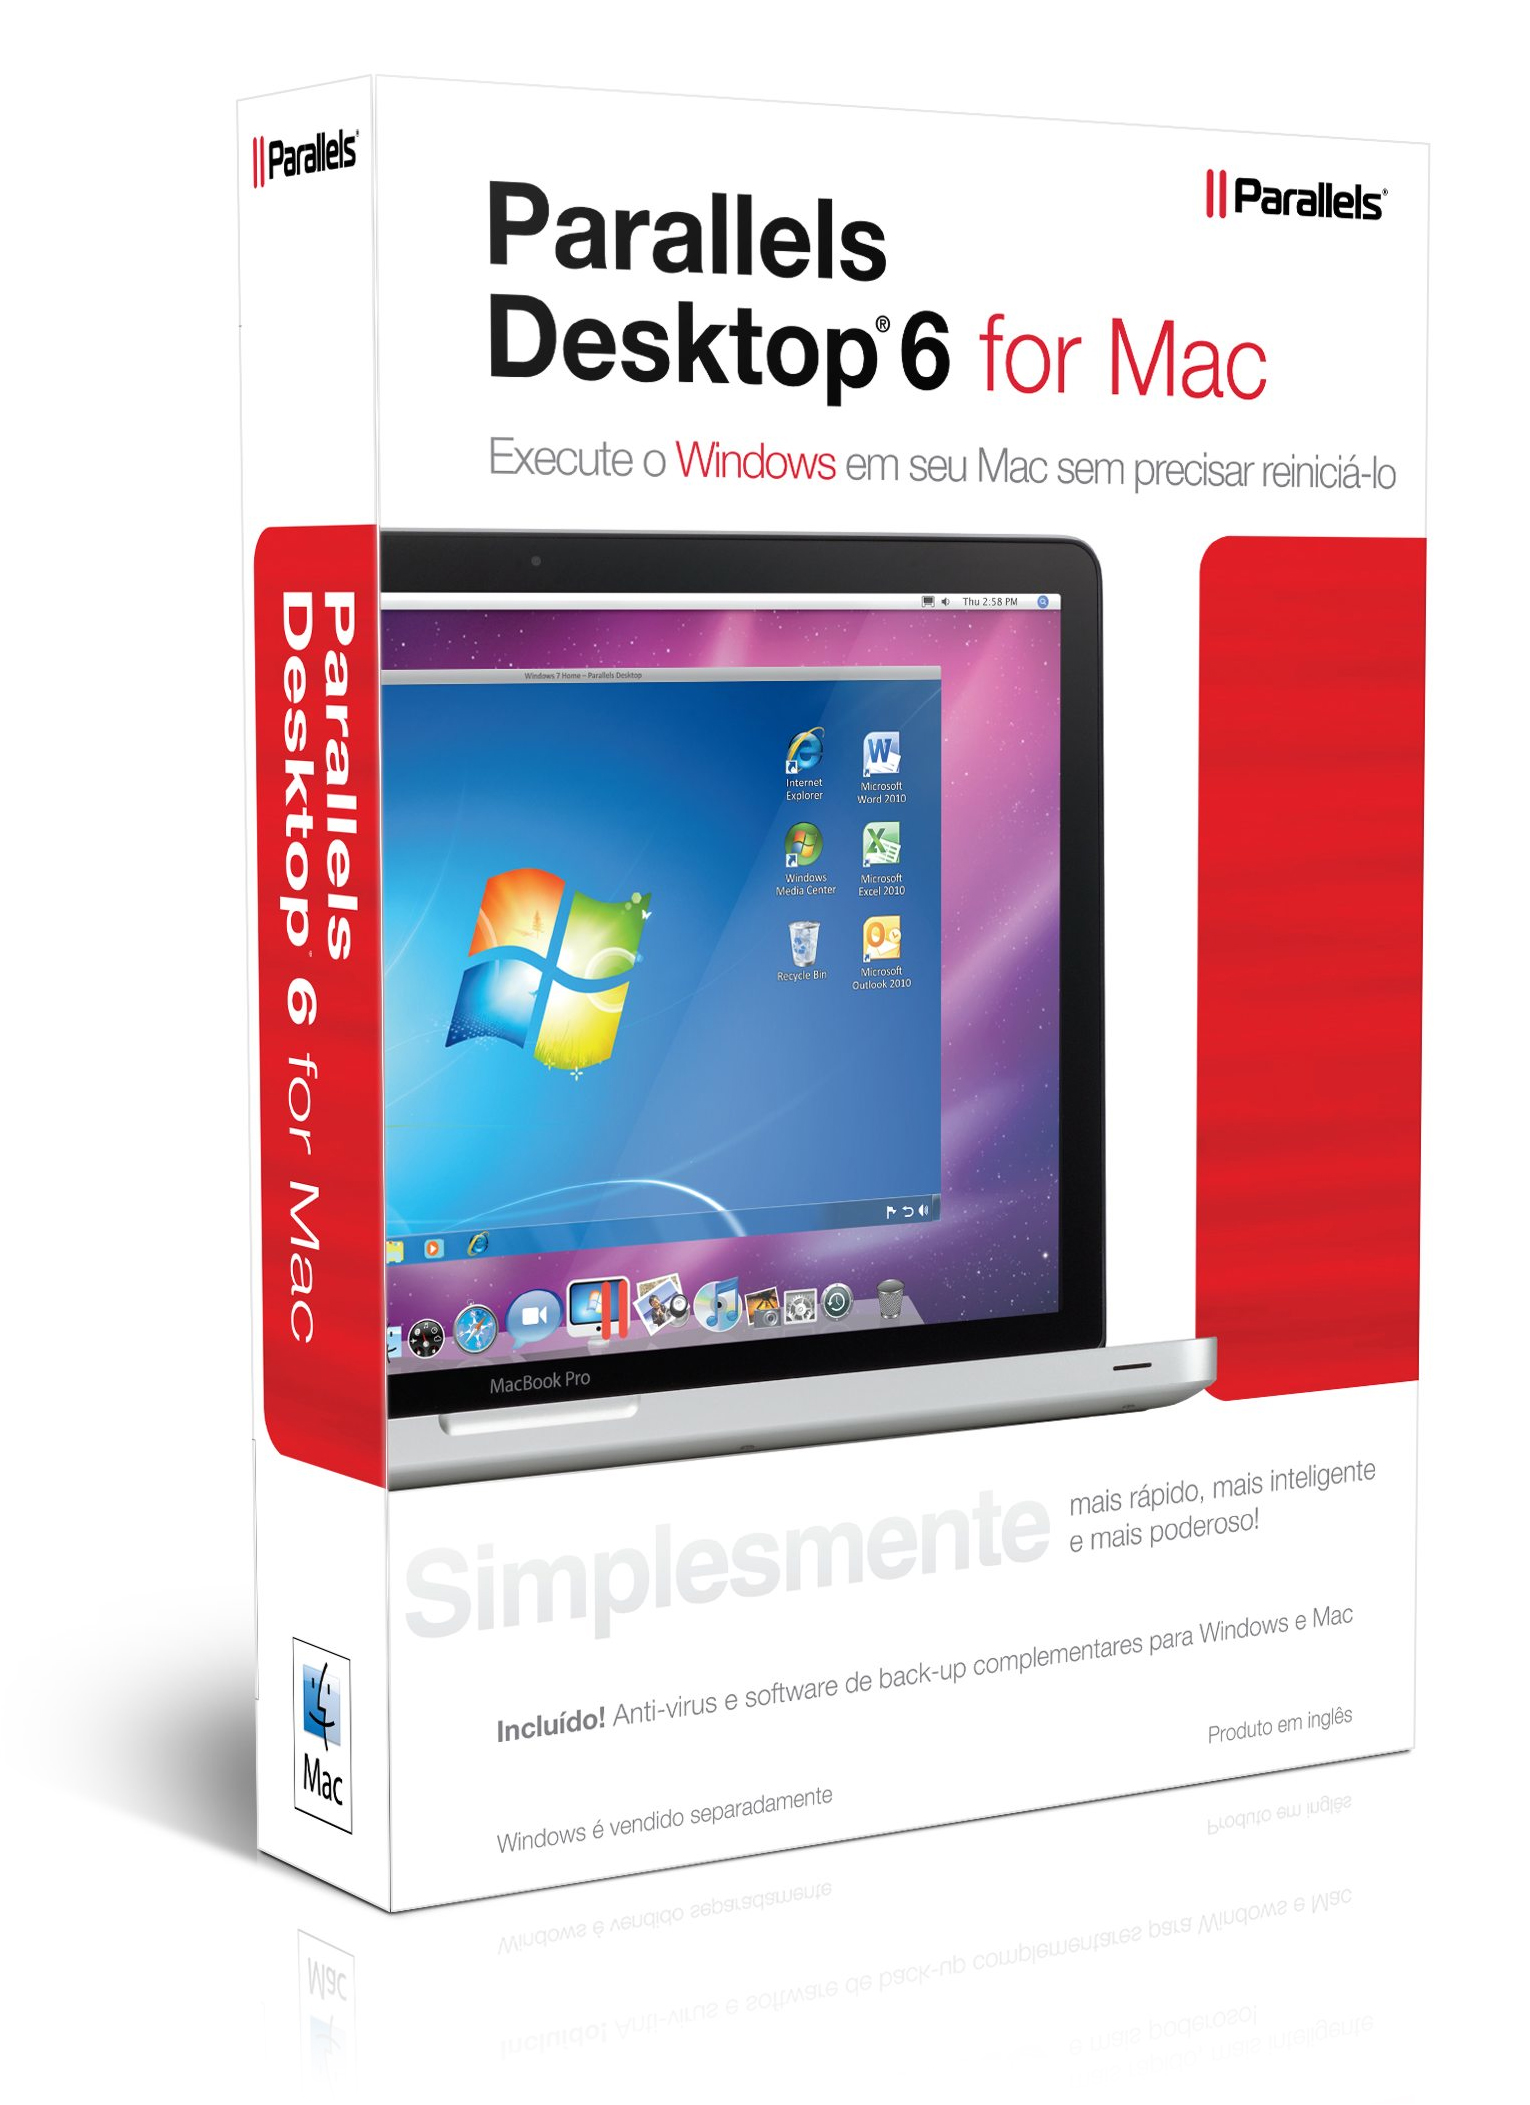 Caixa do Parallels Desktop 6 para Mac